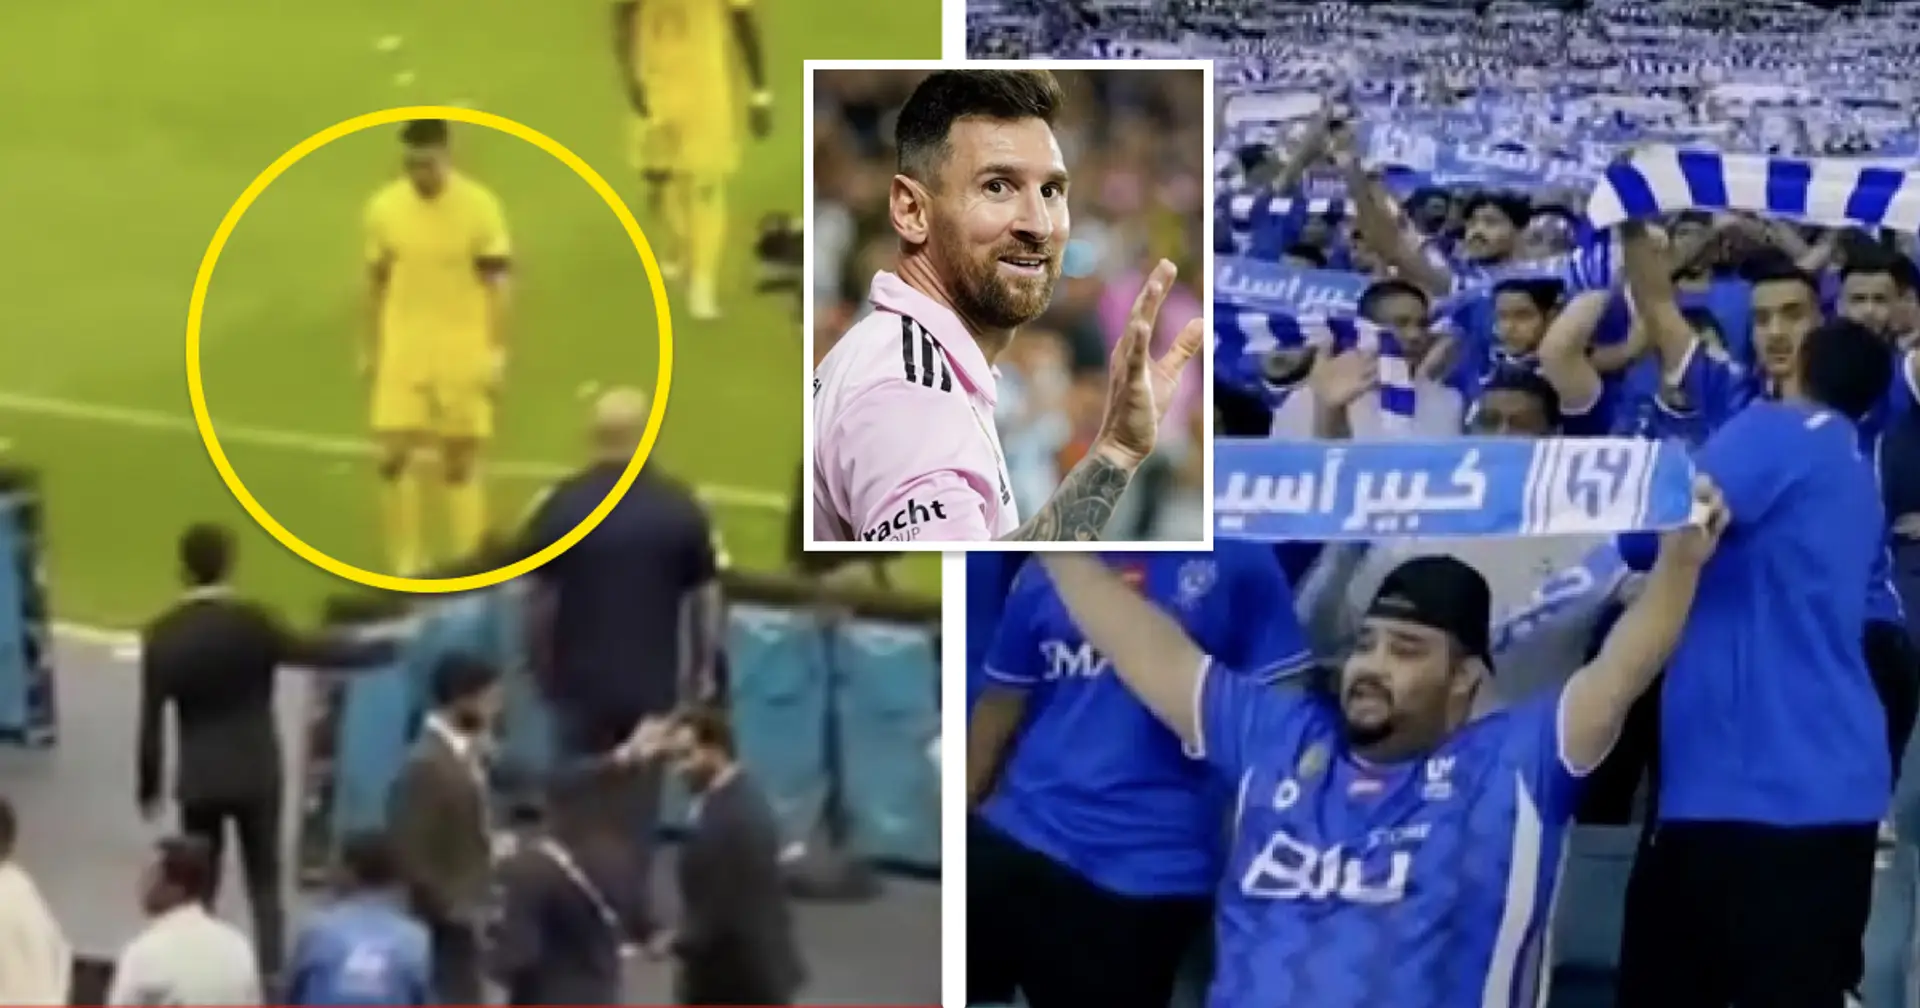 Les fans scandent le nom de Messi lors du Clasico saoudien – la réaction de Ronaldo repérée